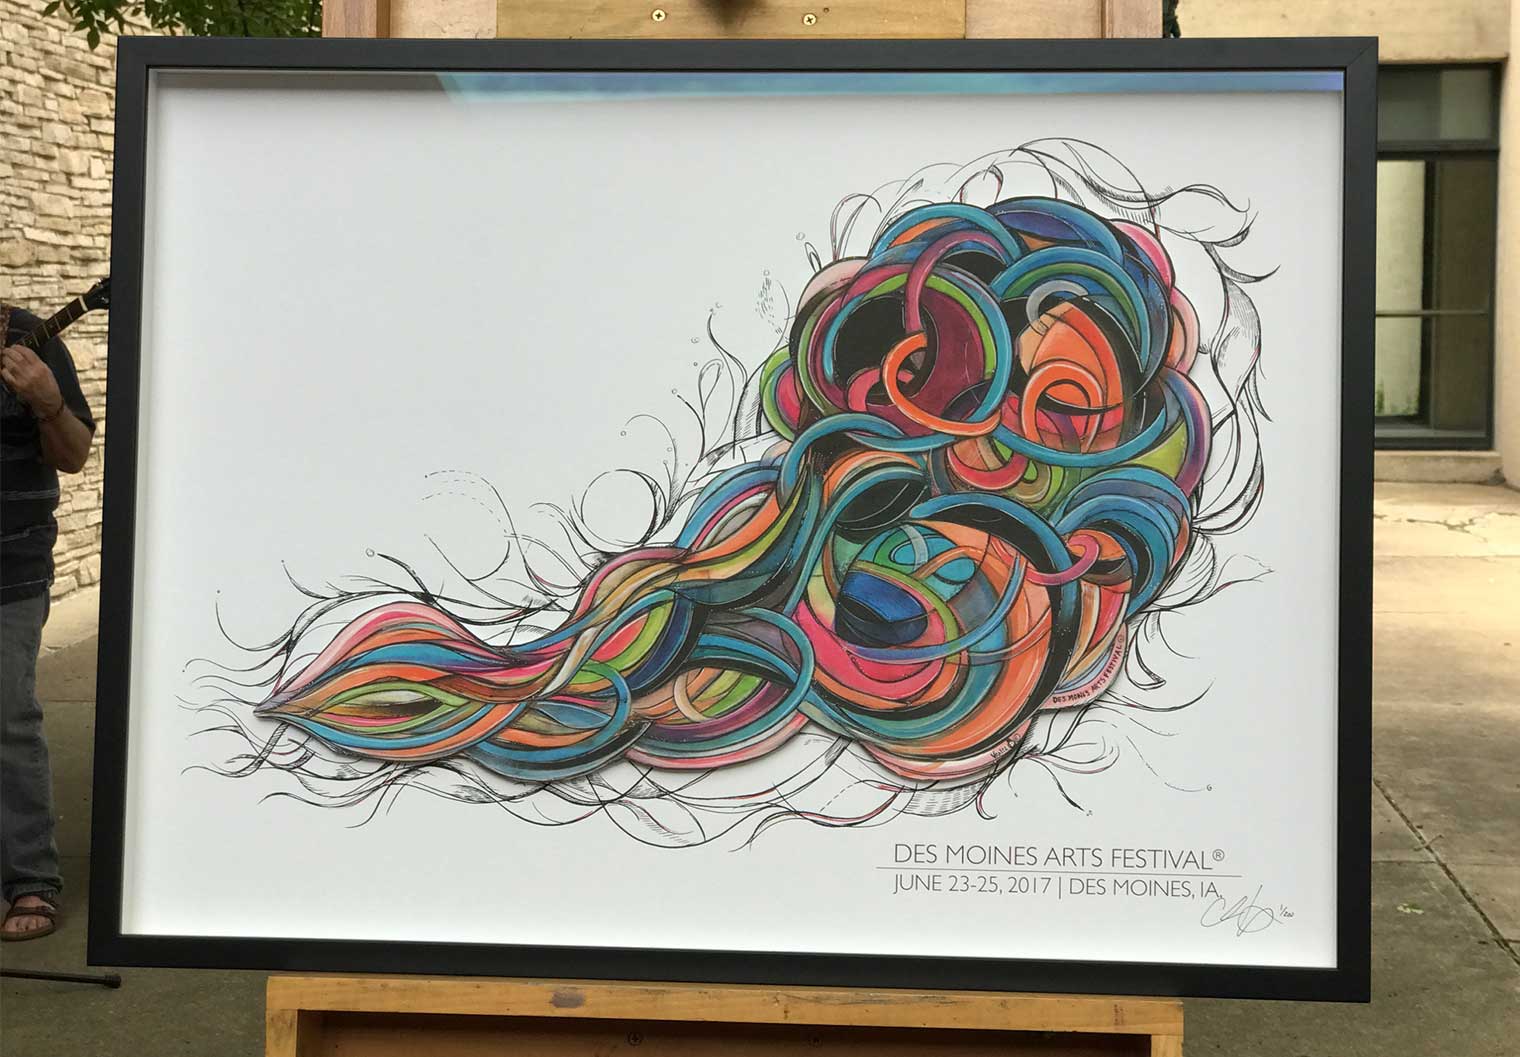 Chris Vance Des Moines Arts Festival 2017 Commemorative Poster unveiling